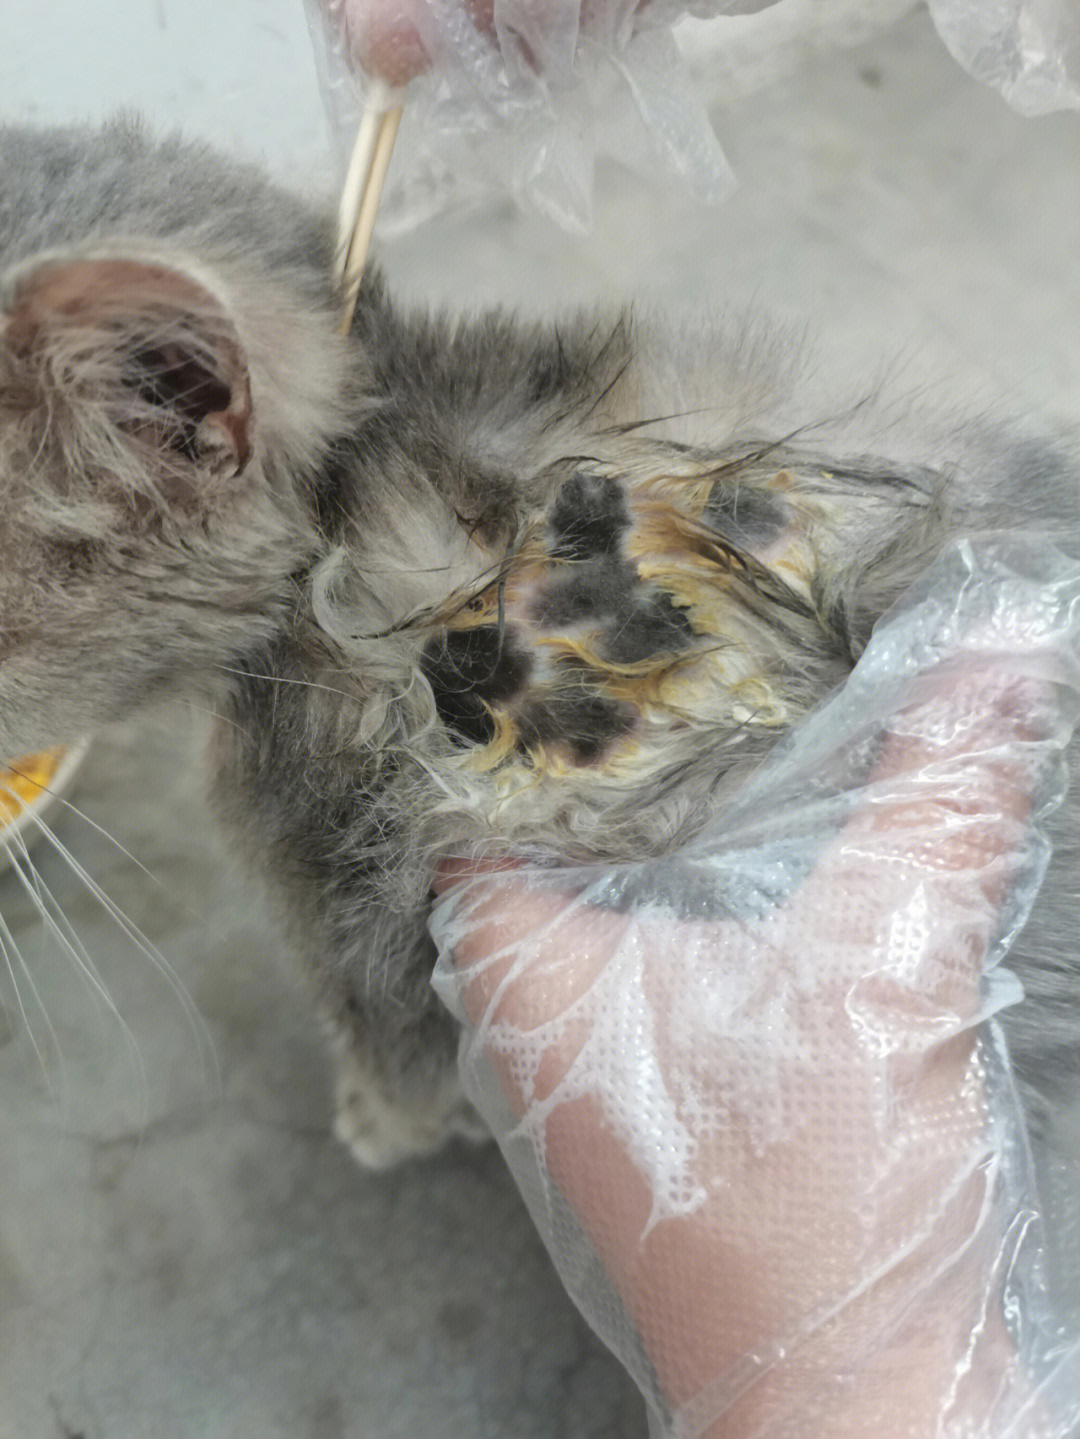 昨天捡了一只被遗弃的小母猫 全身猫癣 怎么办 疫情还封小区了刚开始